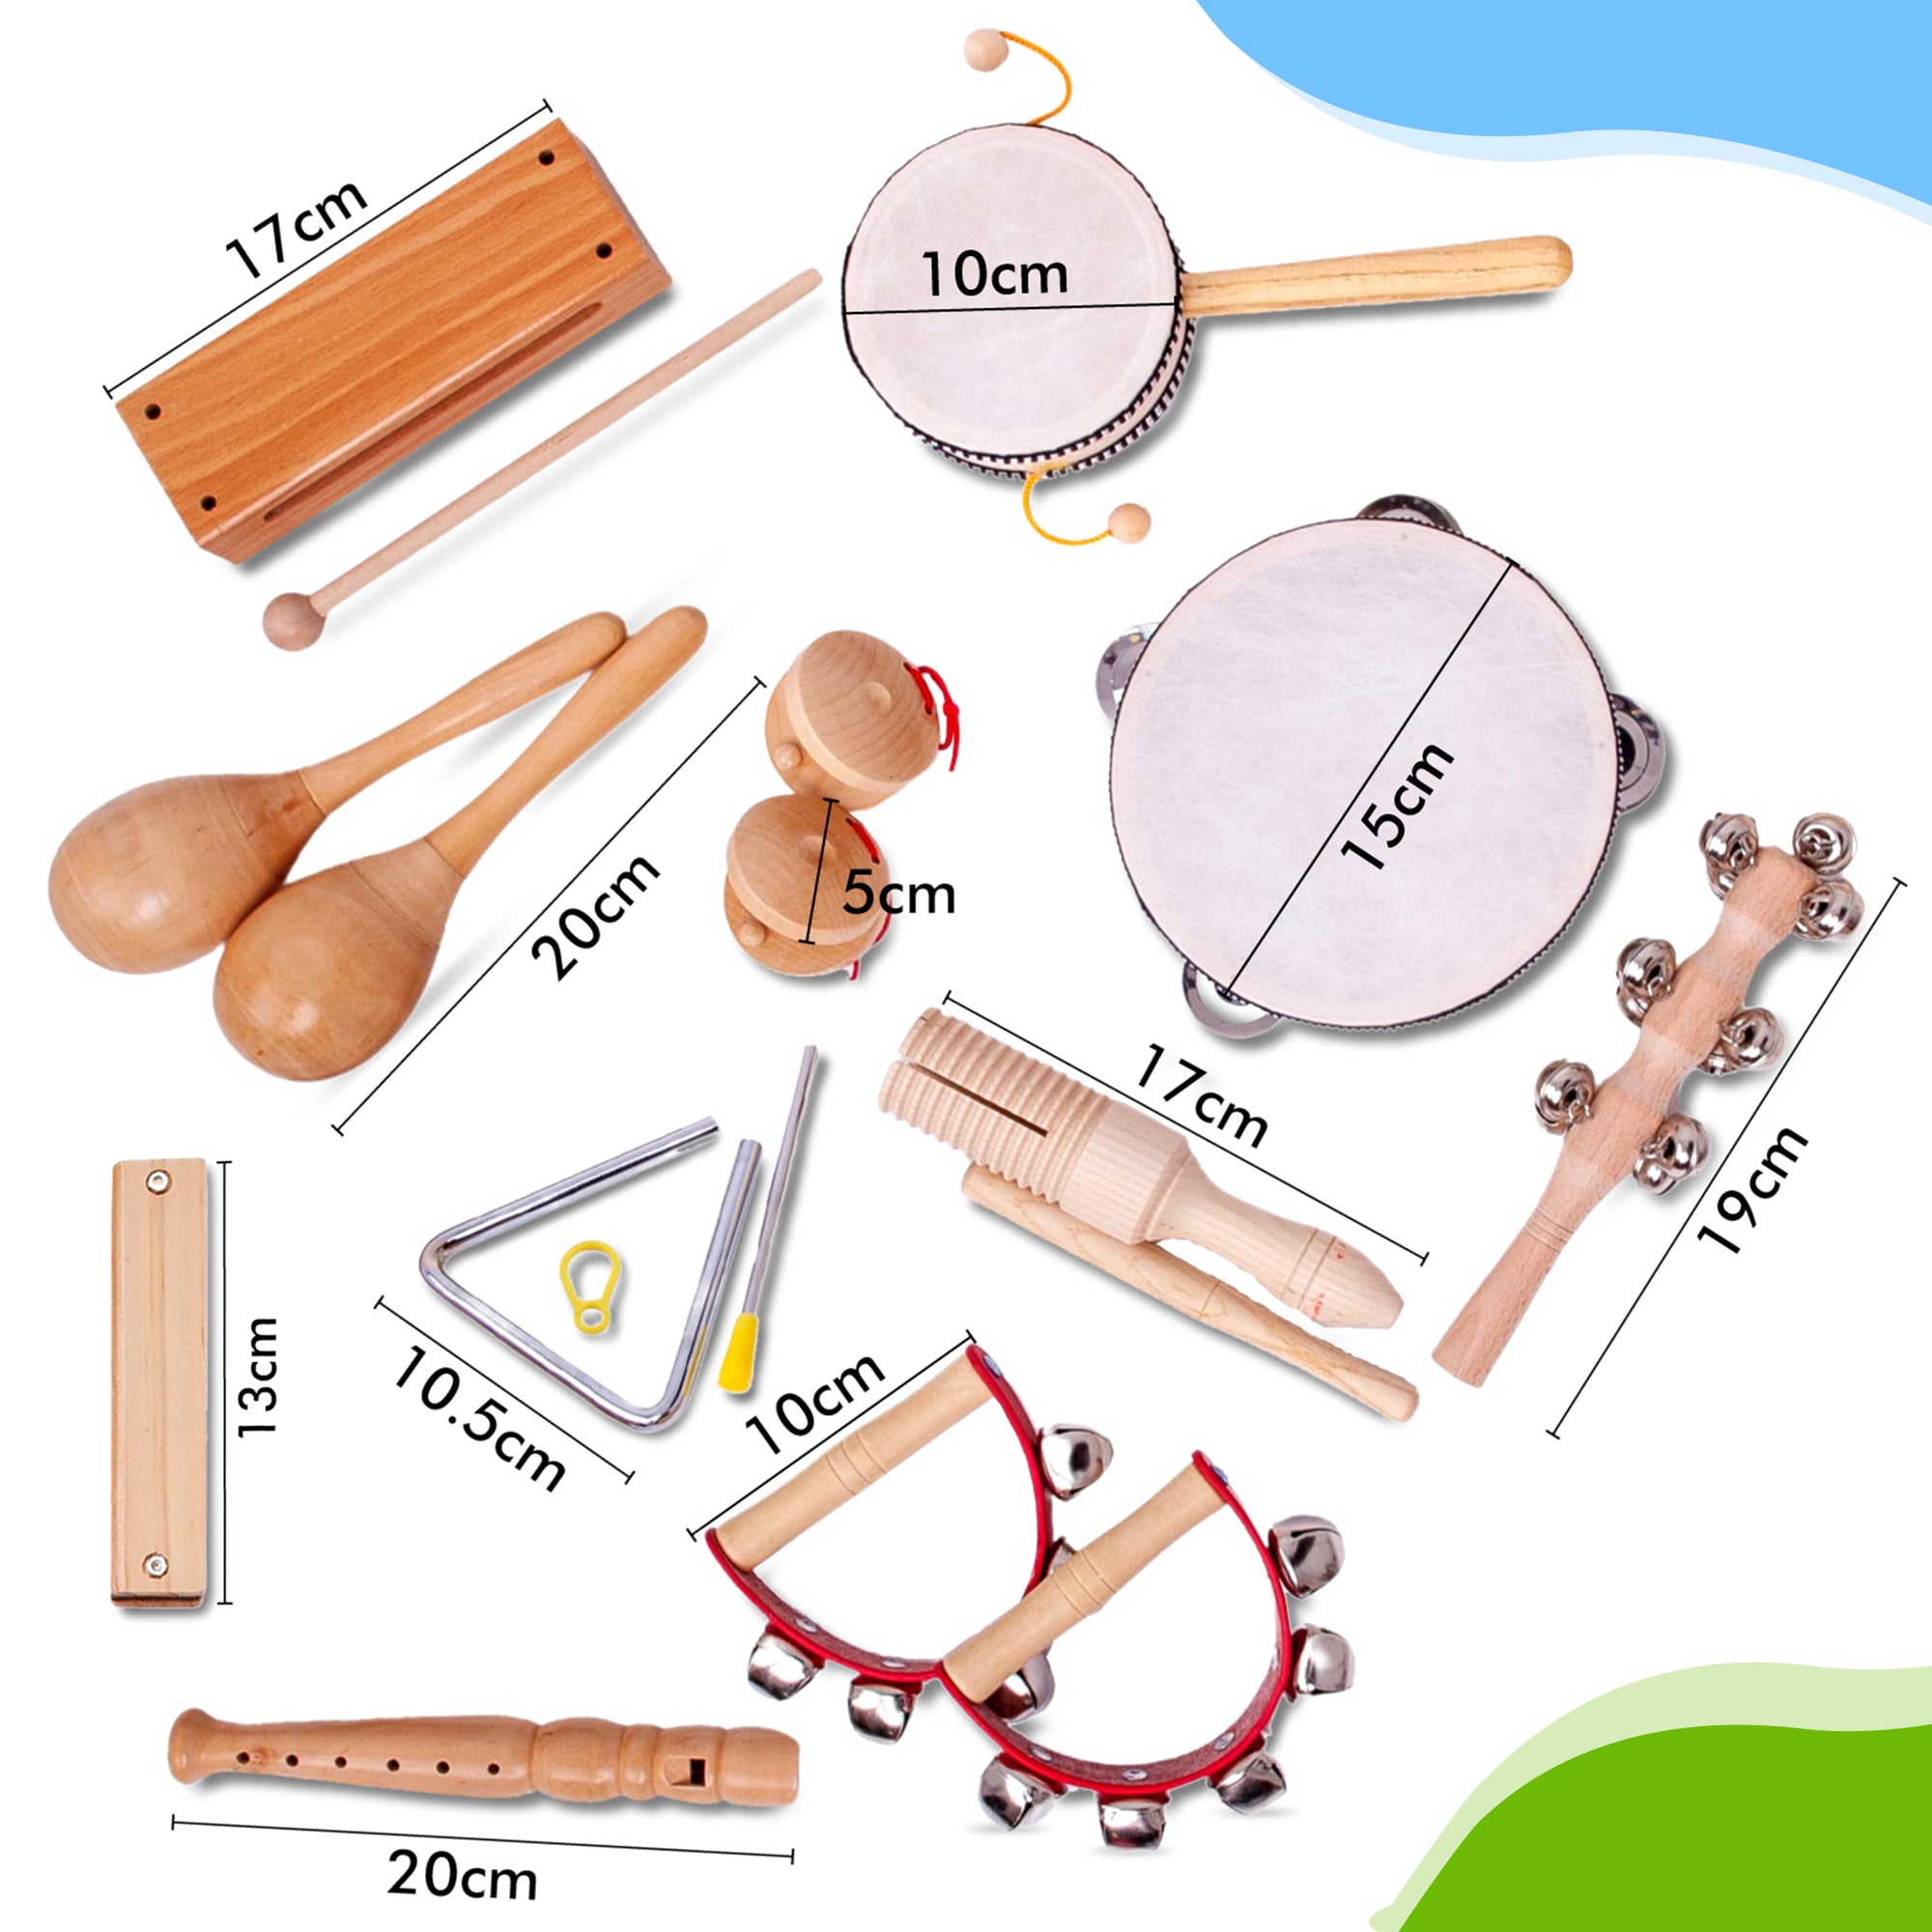 Ce sont les dimensions des instruments jouets en bois, spécialement conçus pour les enfants. Commandez-les tout de suite et jouez de cette flûte à bec ou harmonica en bois demain. Vous pouvez choisir vous-même un instrument jouet